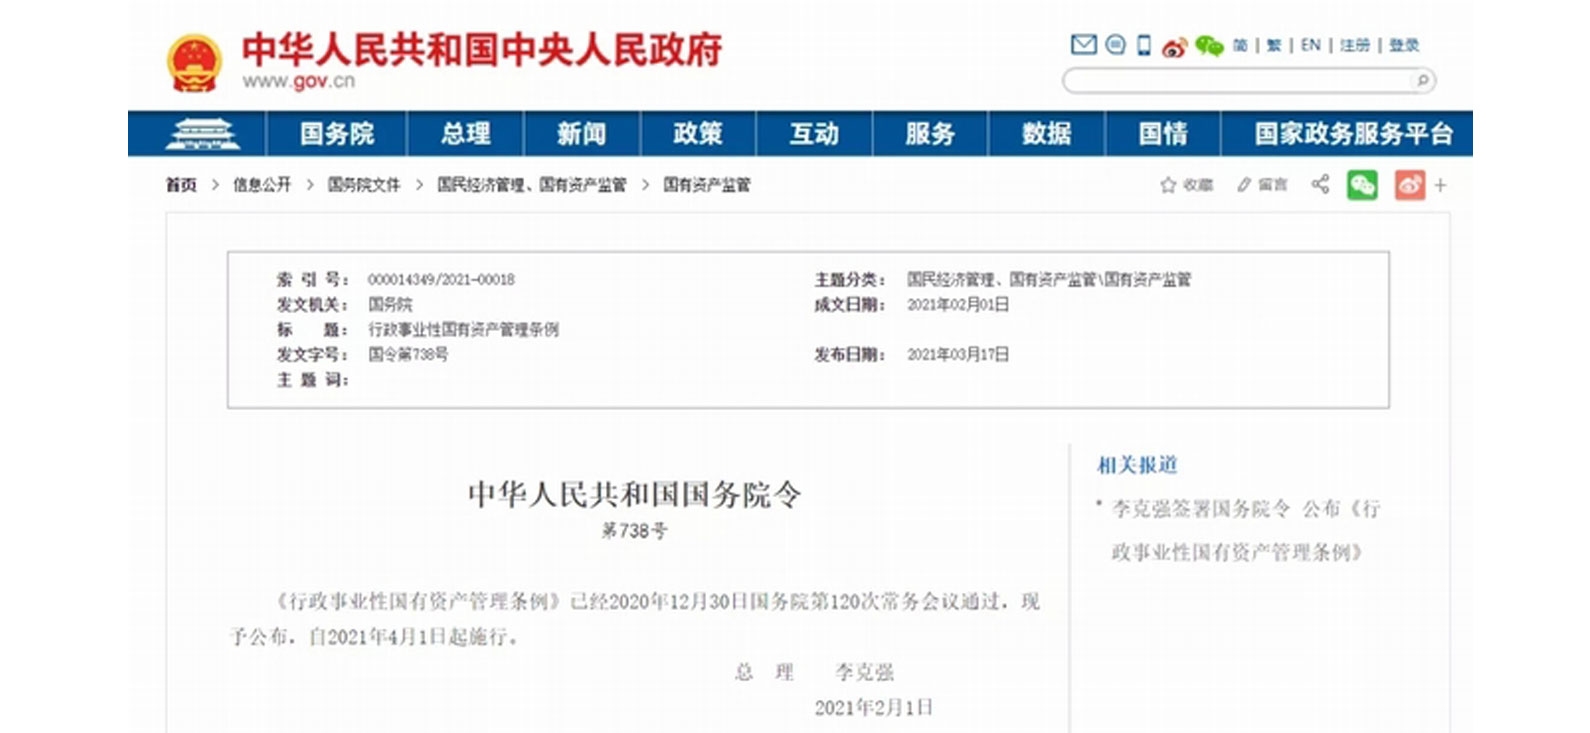 米博官网（中国）股份有限公司内容图尺寸